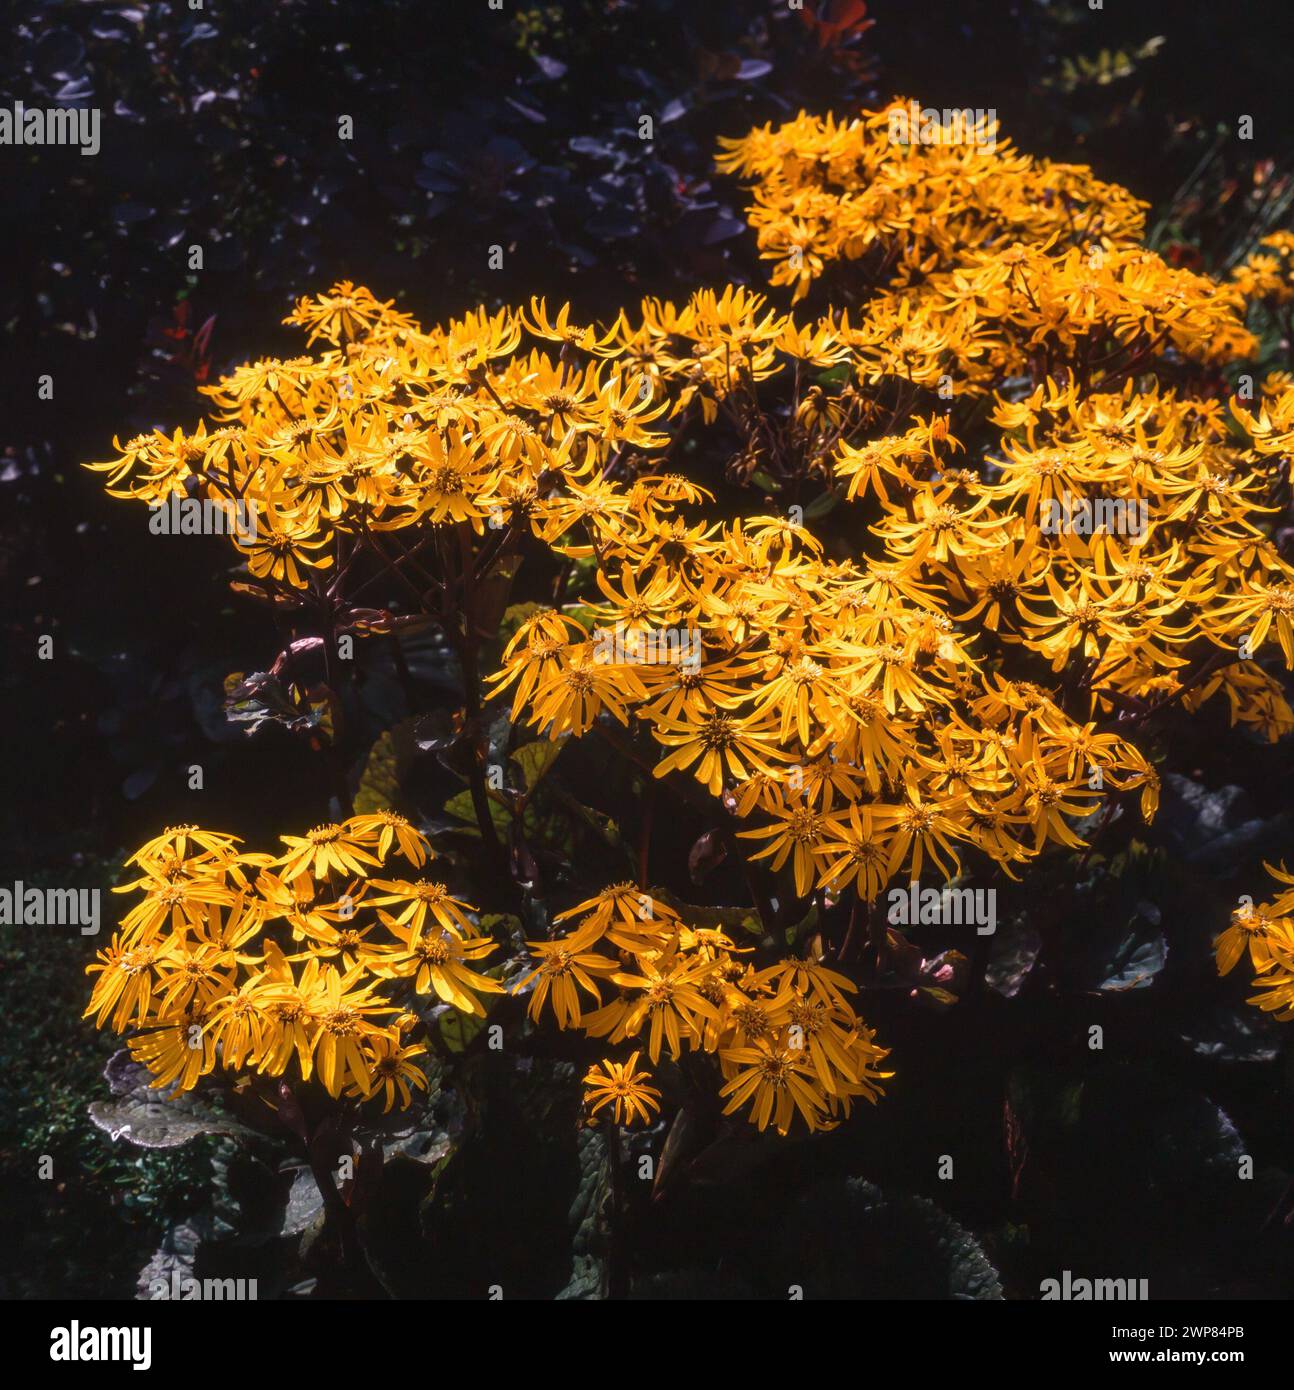 Leopardenpflanze mit hellgelben Blüten vor dunklem Hintergrund, Ligularia „Britt Marie Crawford“, wächst im englischen Garten, August, England, Großbritannien Stockfoto